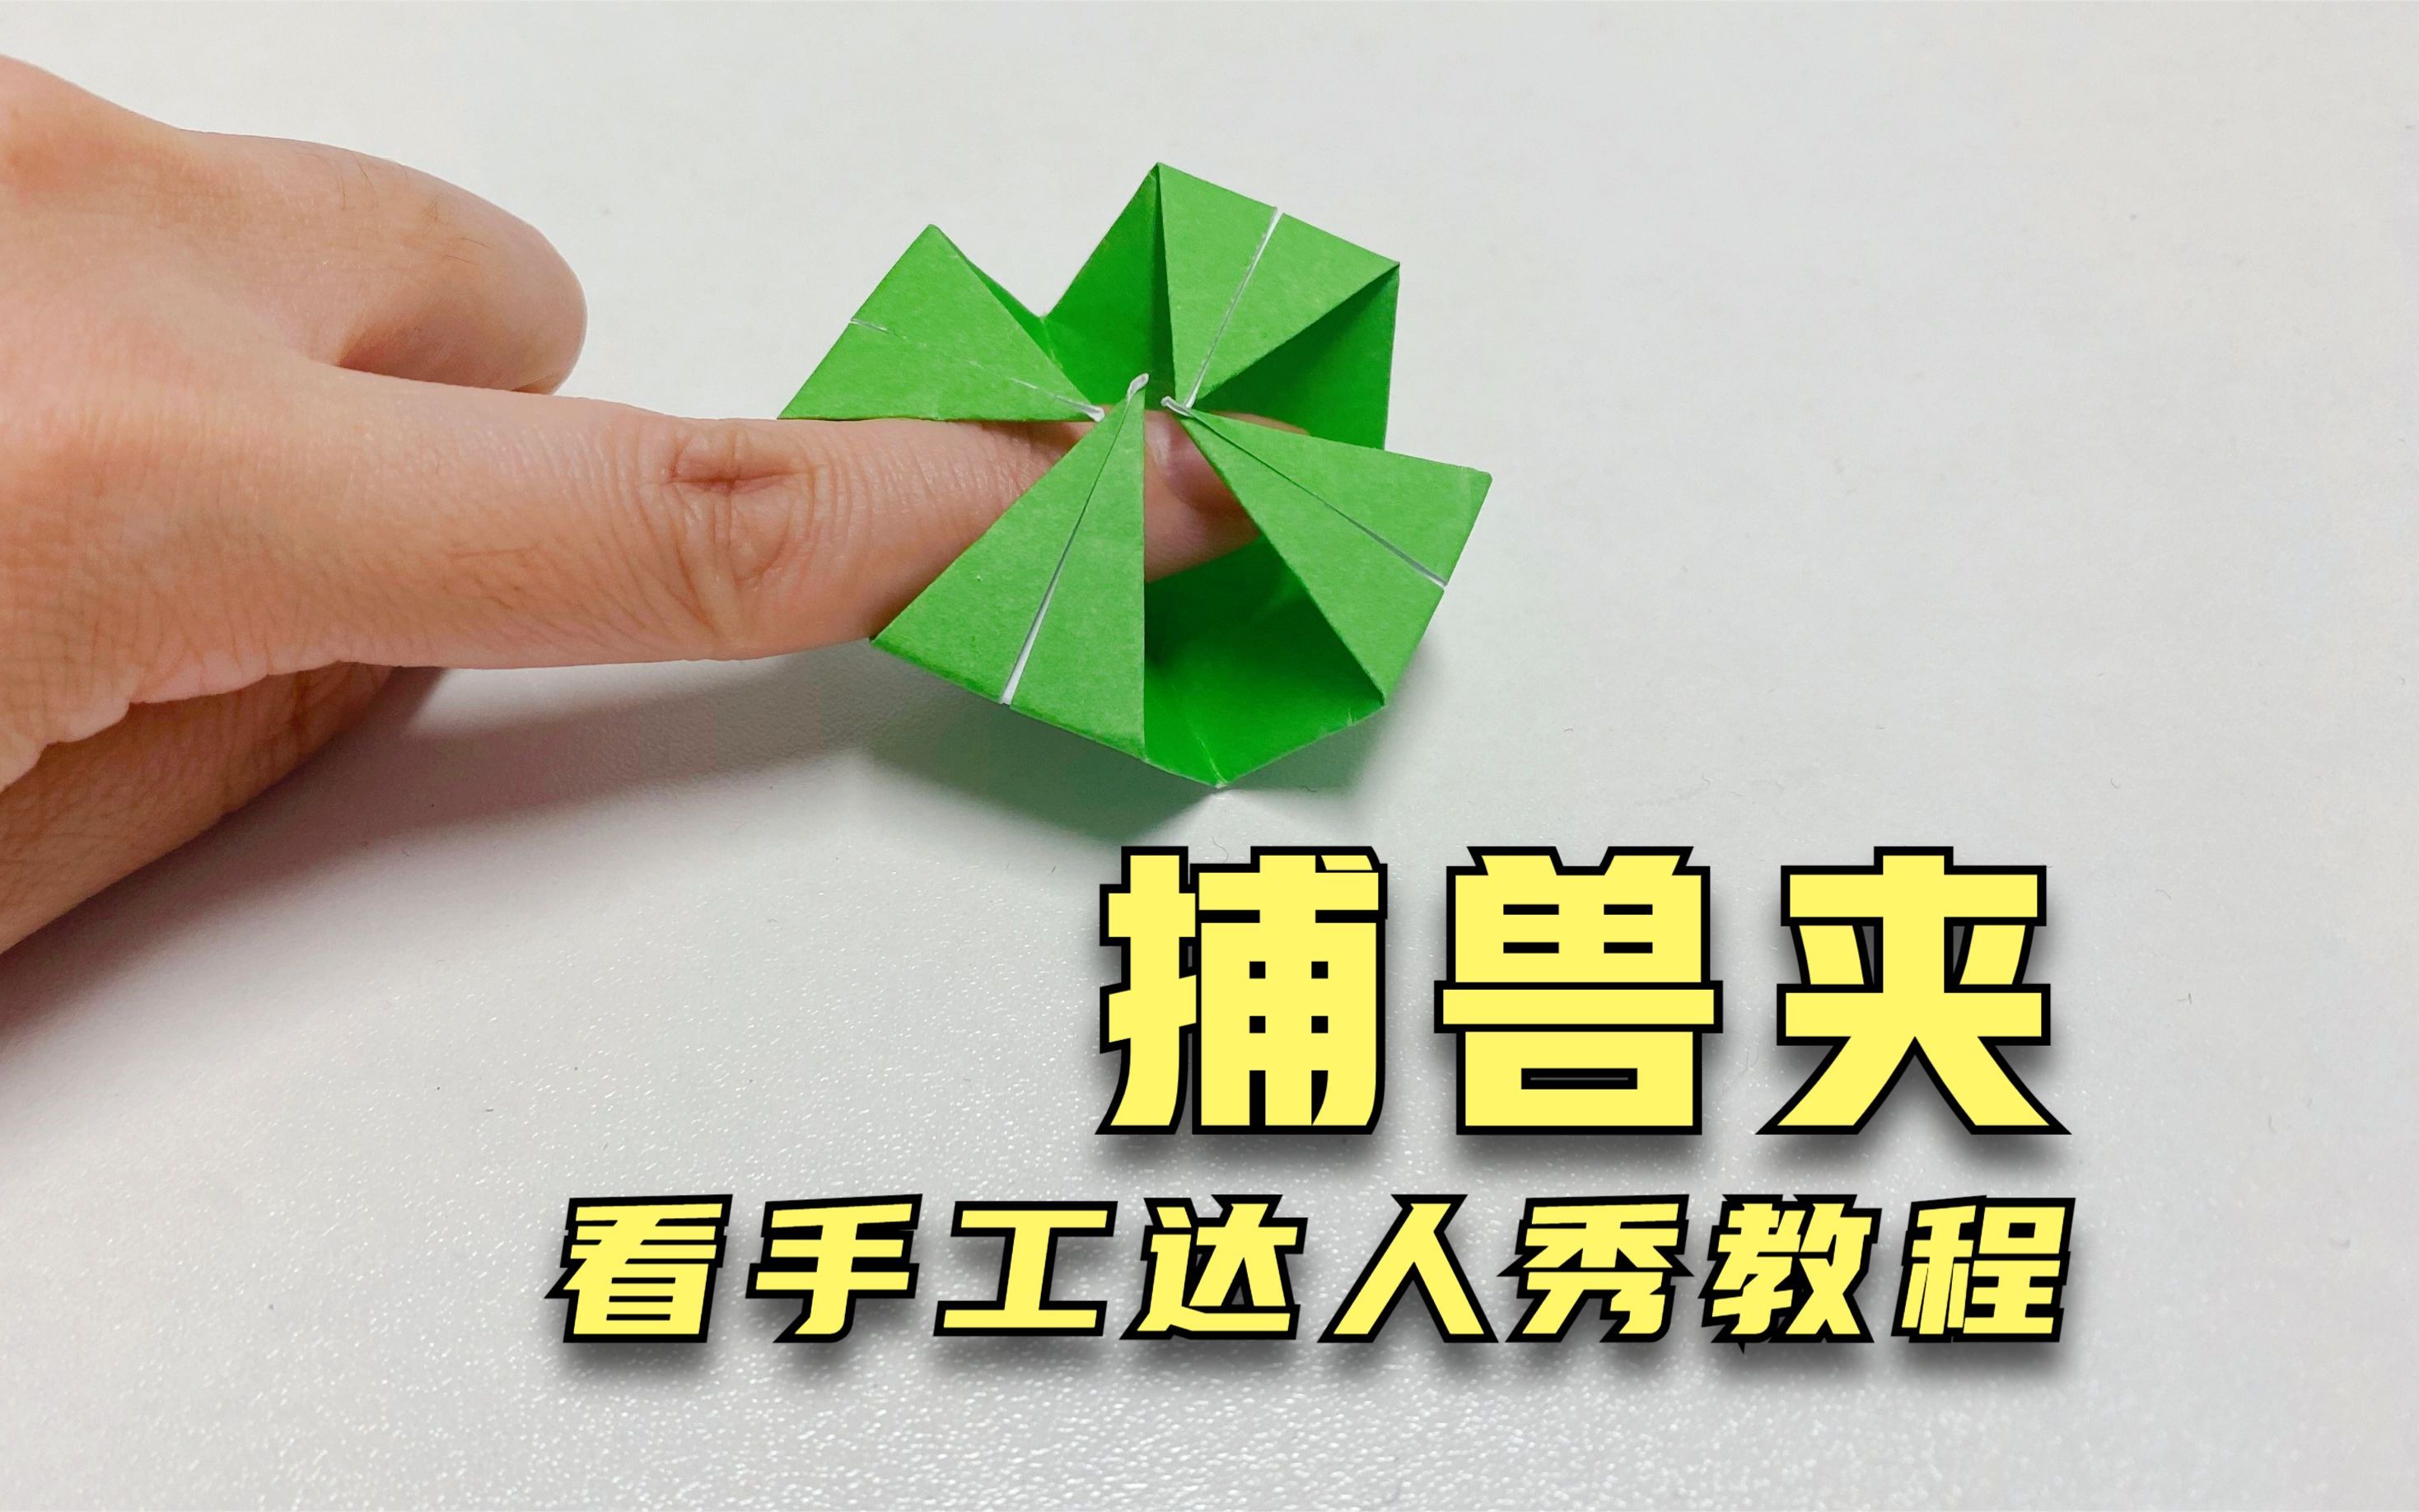 用折纸的方法做一个捕兽夹,简单好玩,快来试试